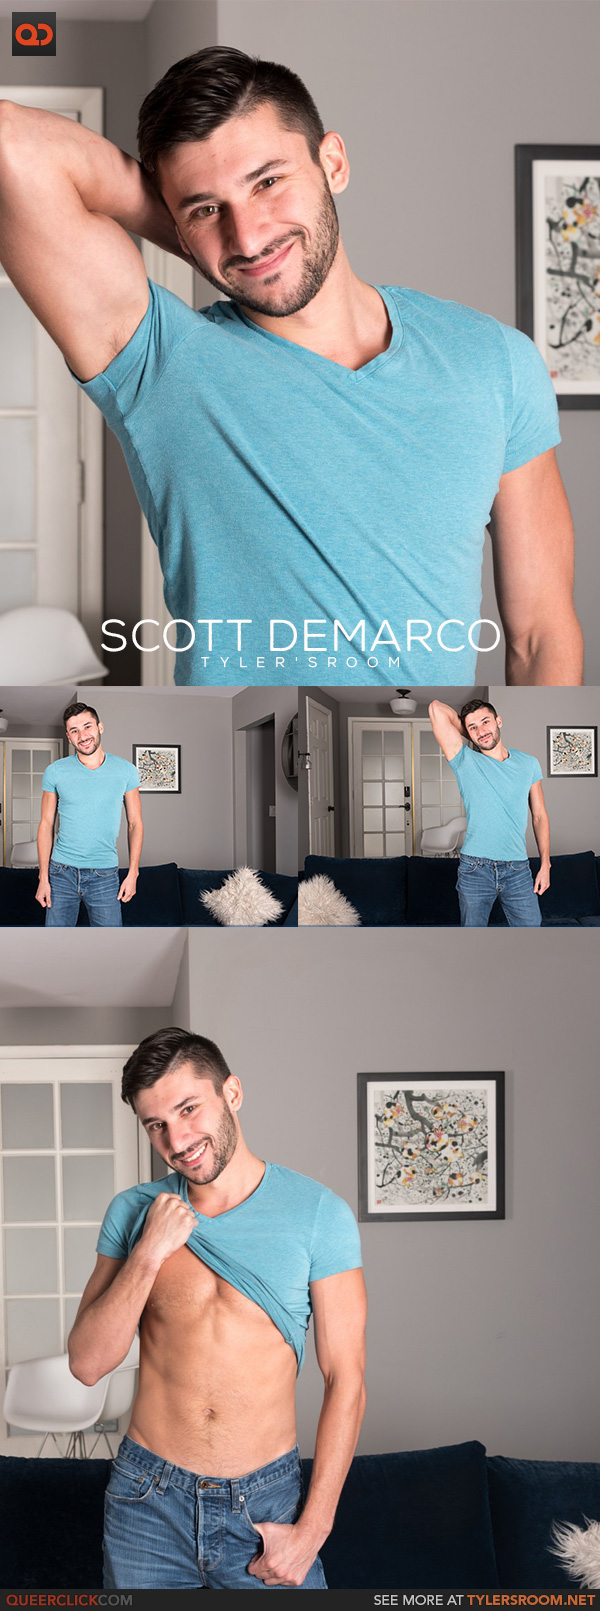 Tyler's Room: Scott DeMarco